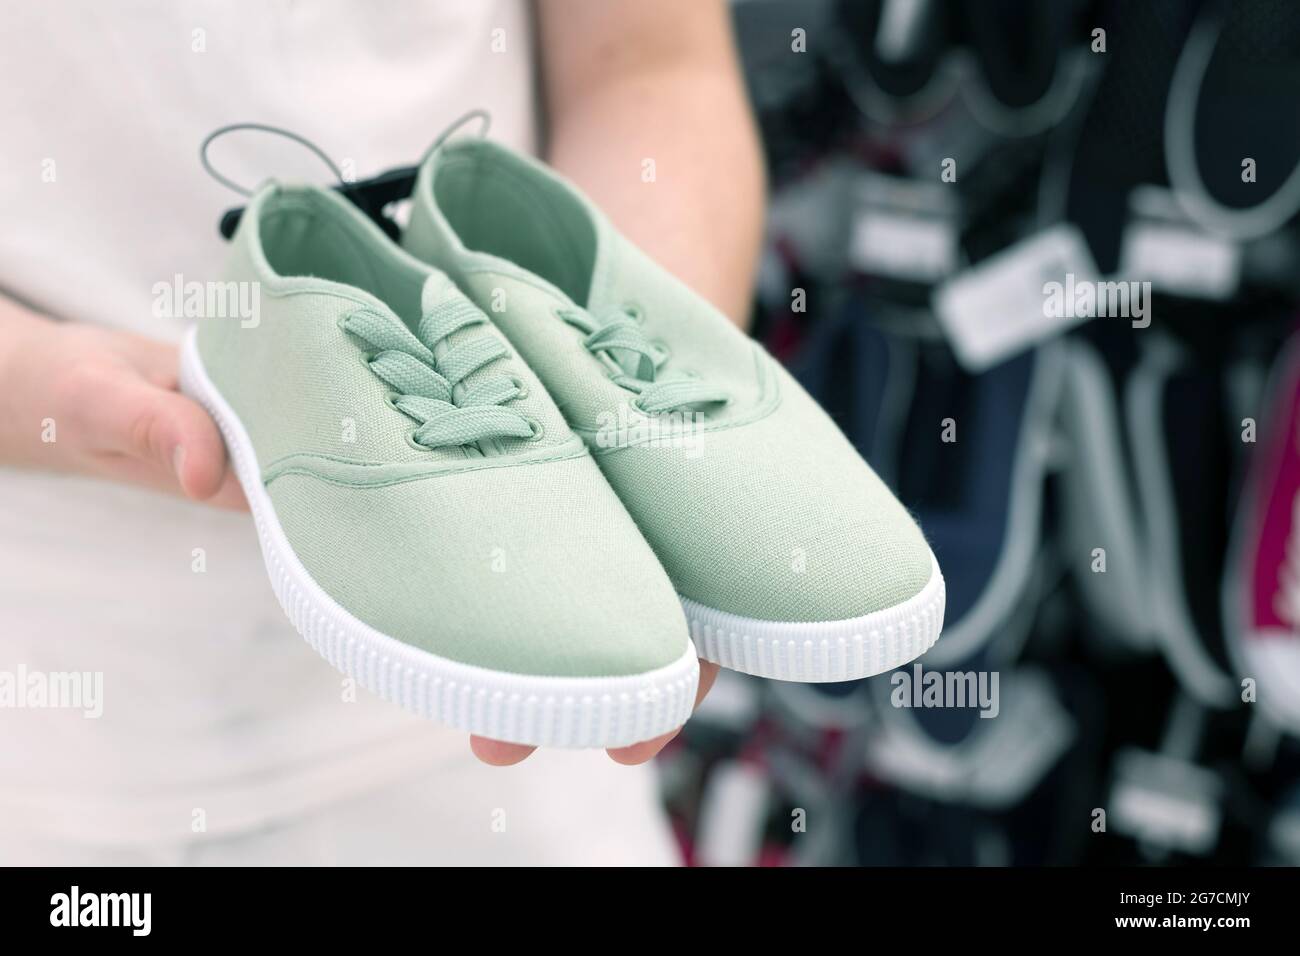 Green children's sneakers in the men's hands Stock Photo